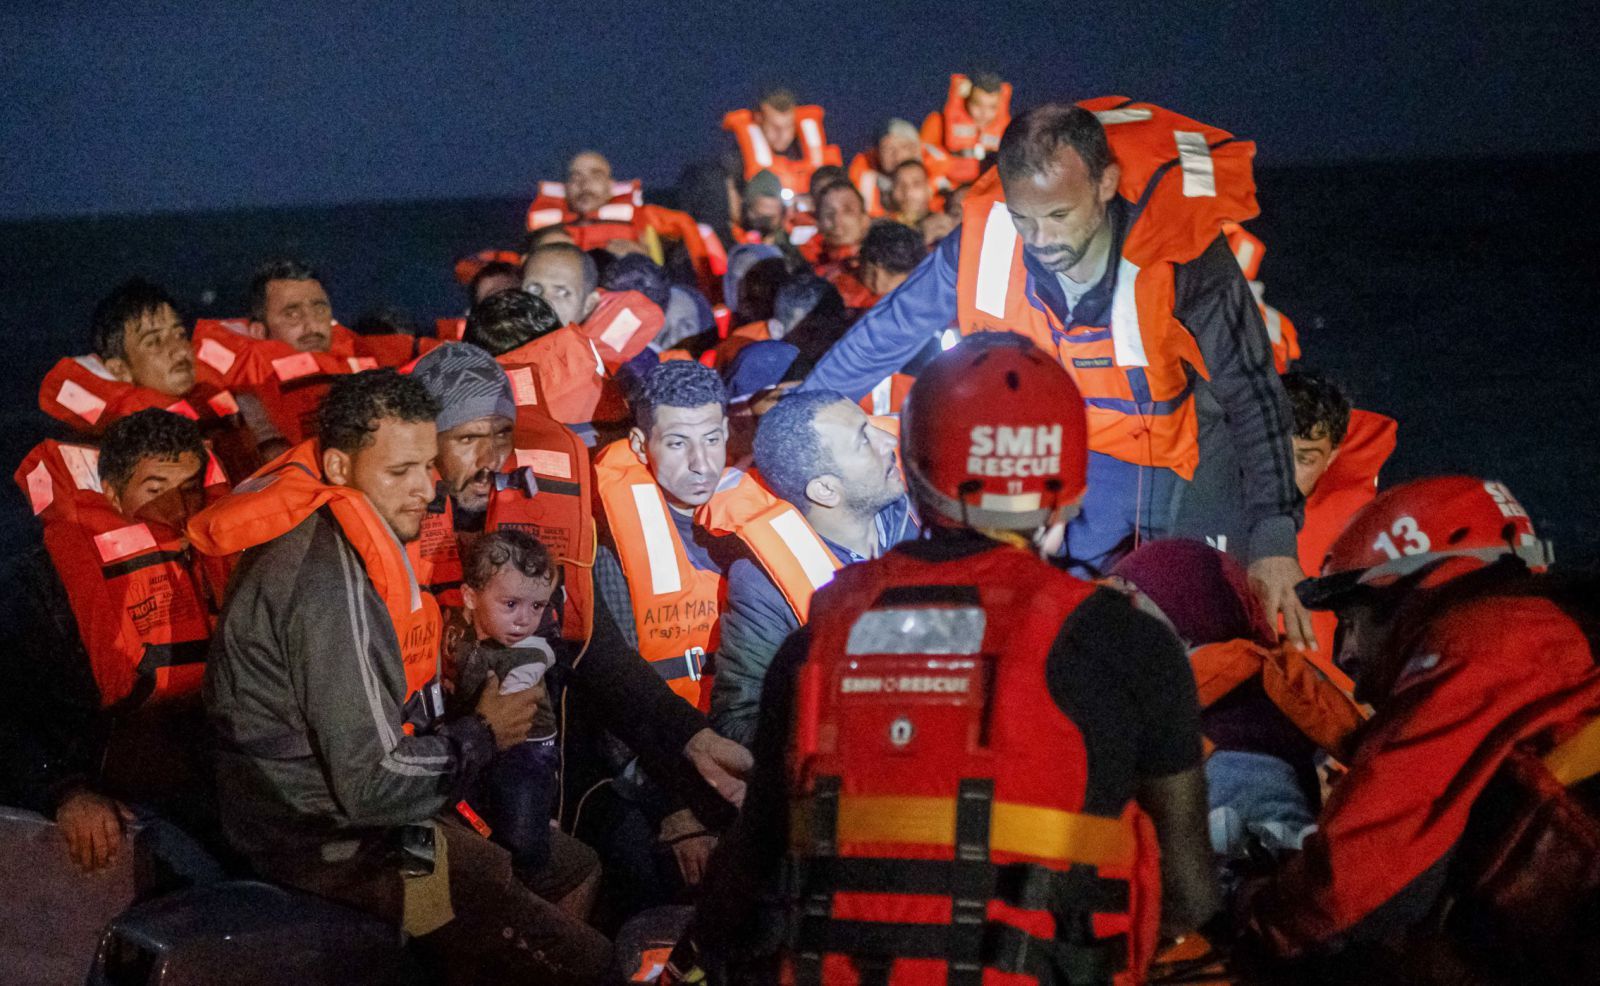 Una de les dues llanxes ràpides de l’Aita Mari s’acosta a un bot a la deriva per començar a transportar dels migrants al vaixell